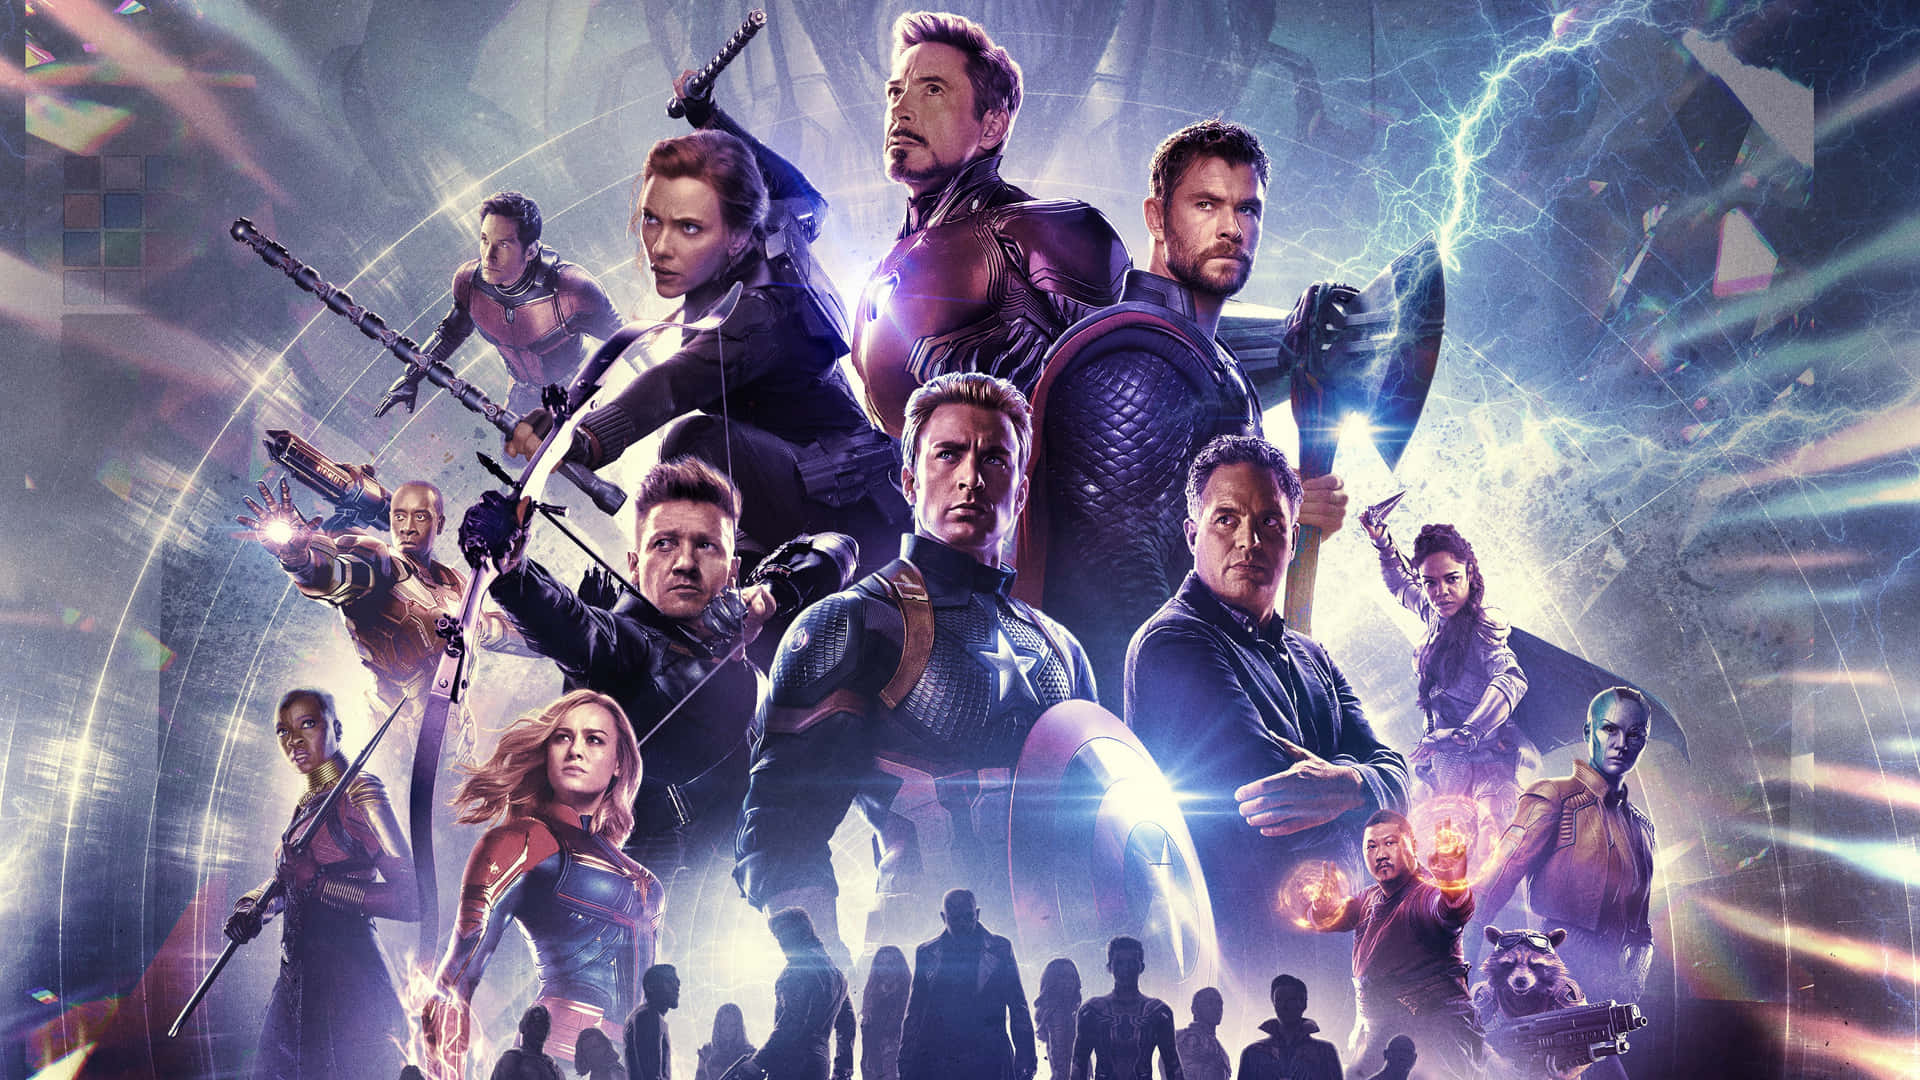 Marvel heroes unite in Avengers Endgame